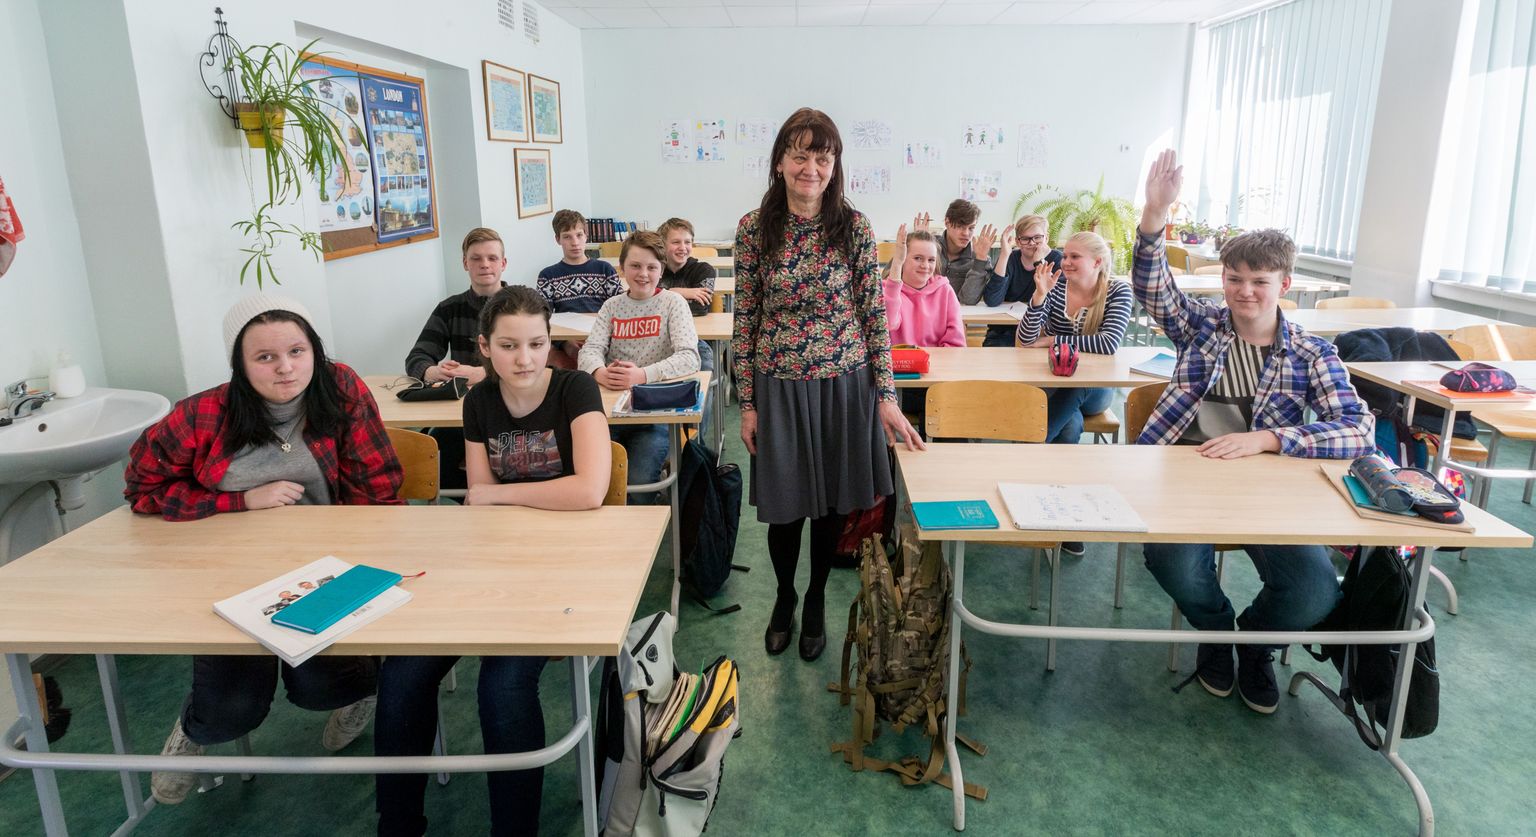 Loksa kooli 8. klassi õpilastest pea pooled elavad Kuusalu vallas, üle poole aga Loksa linnas. Õpetaja Eve Jürgens elab küll vallas, aga sissekirjutatud on linna.